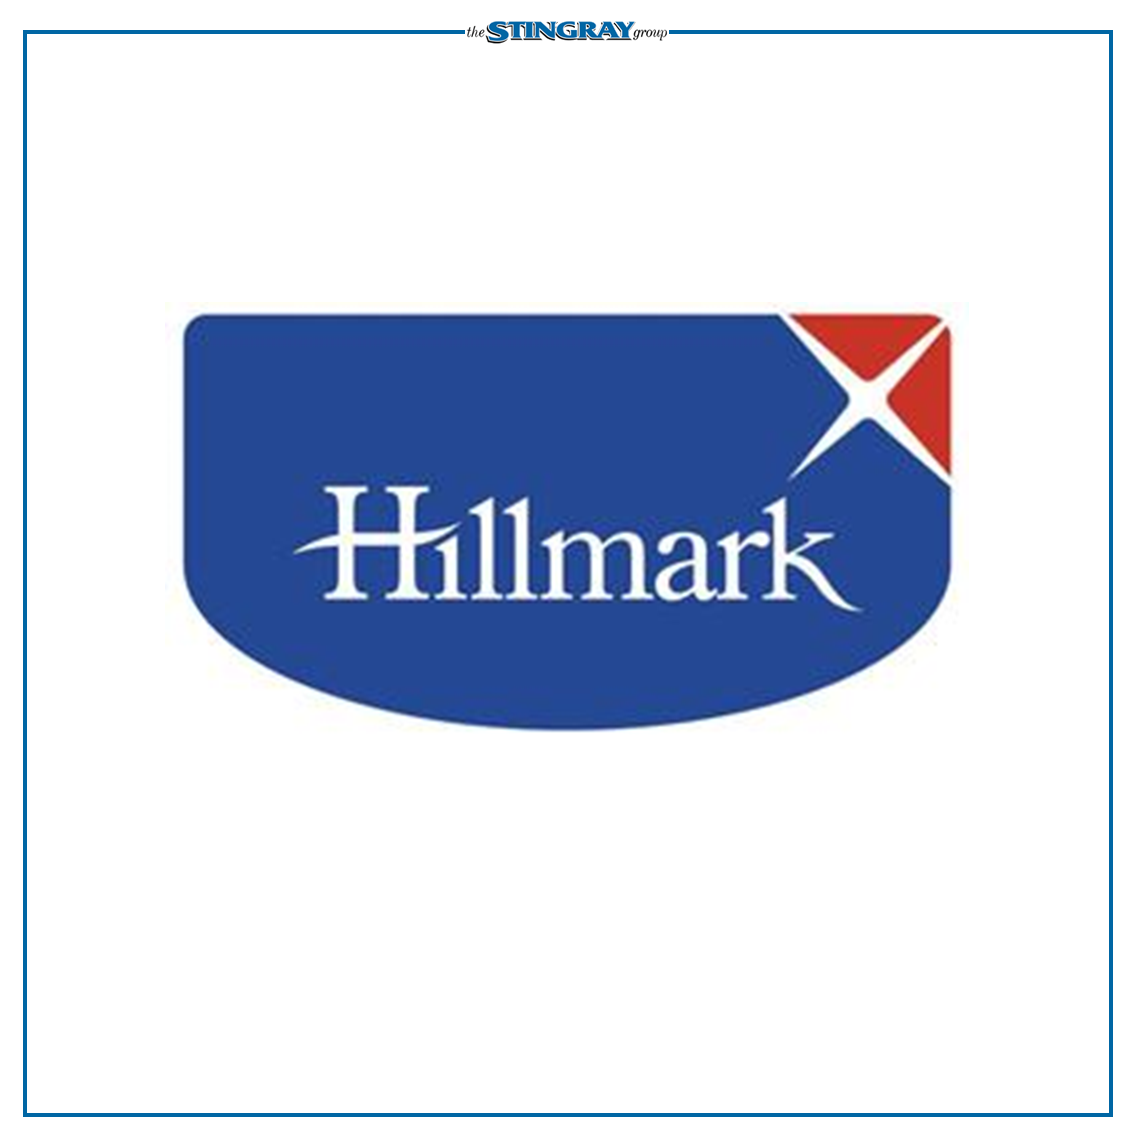 STINGRAY - Hillmark Catalogue